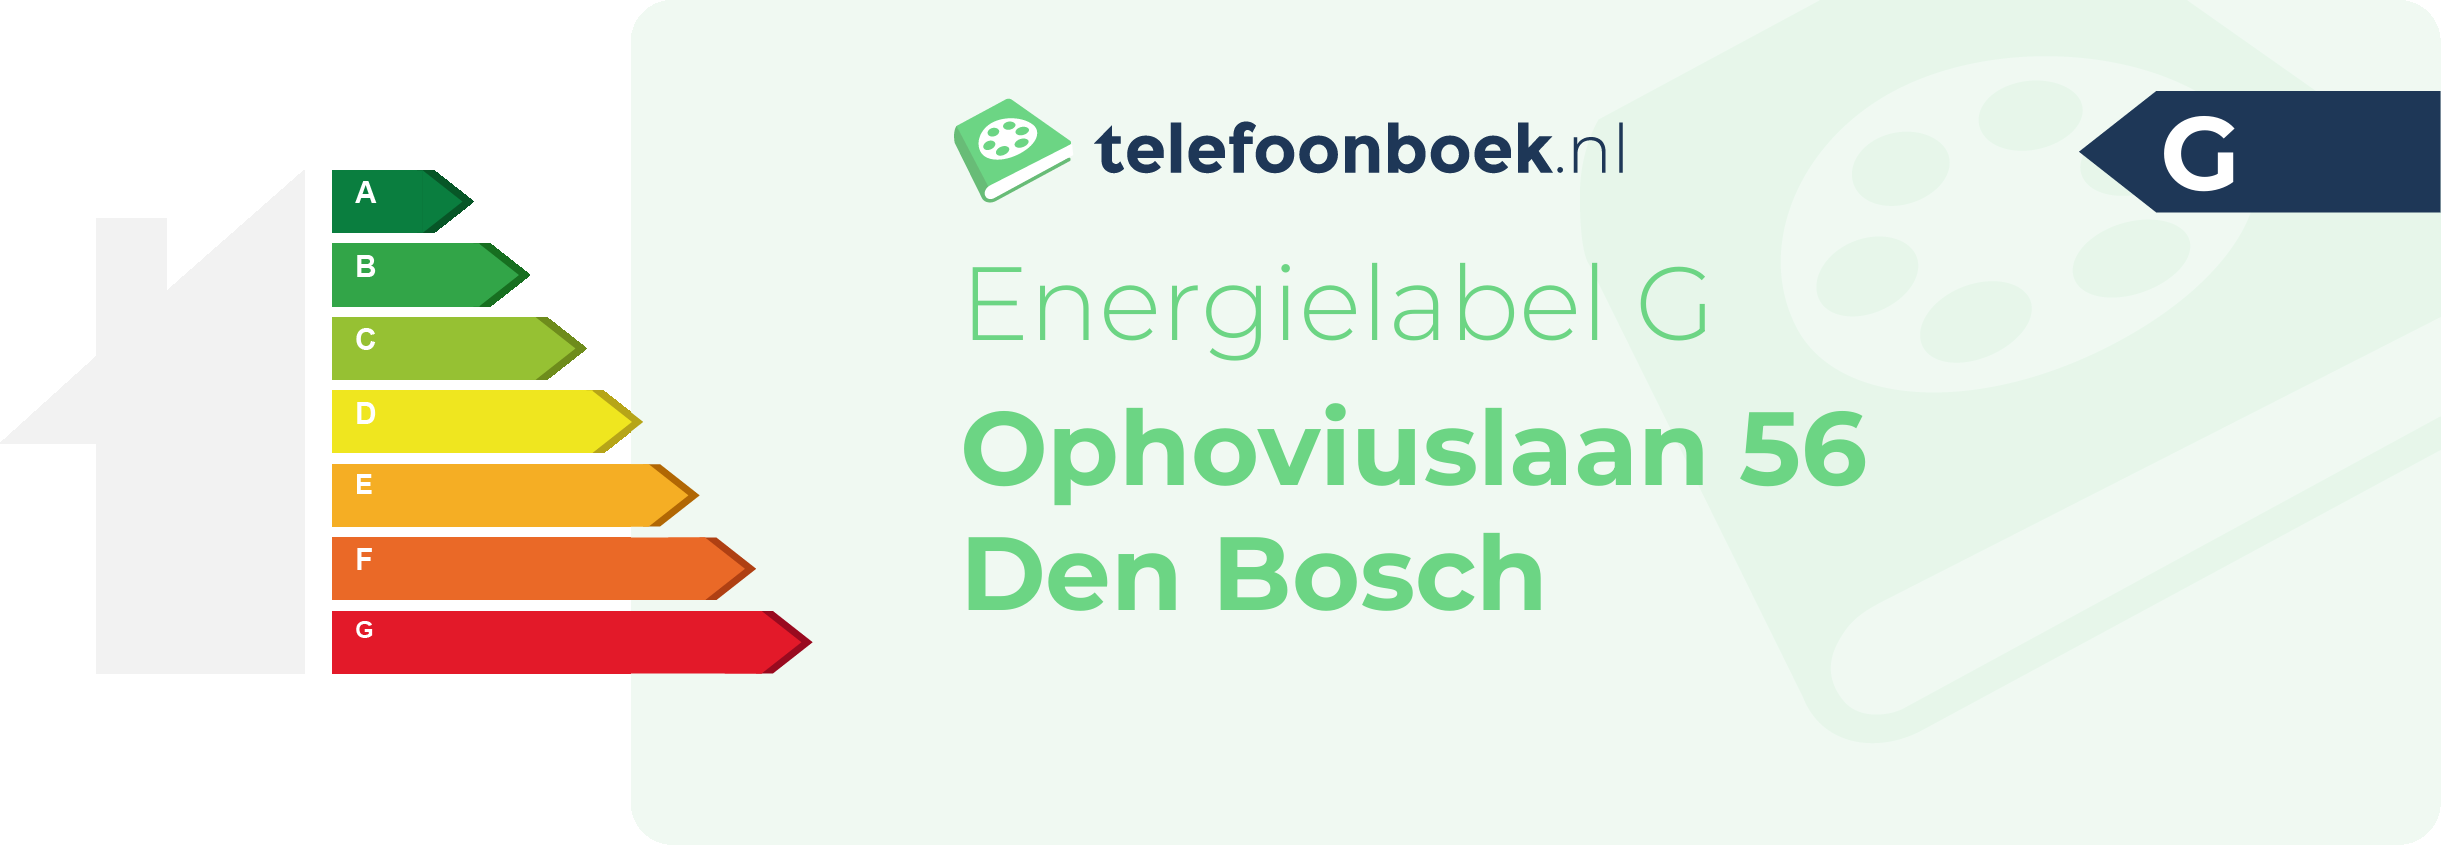 Energielabel Ophoviuslaan 56 Den Bosch